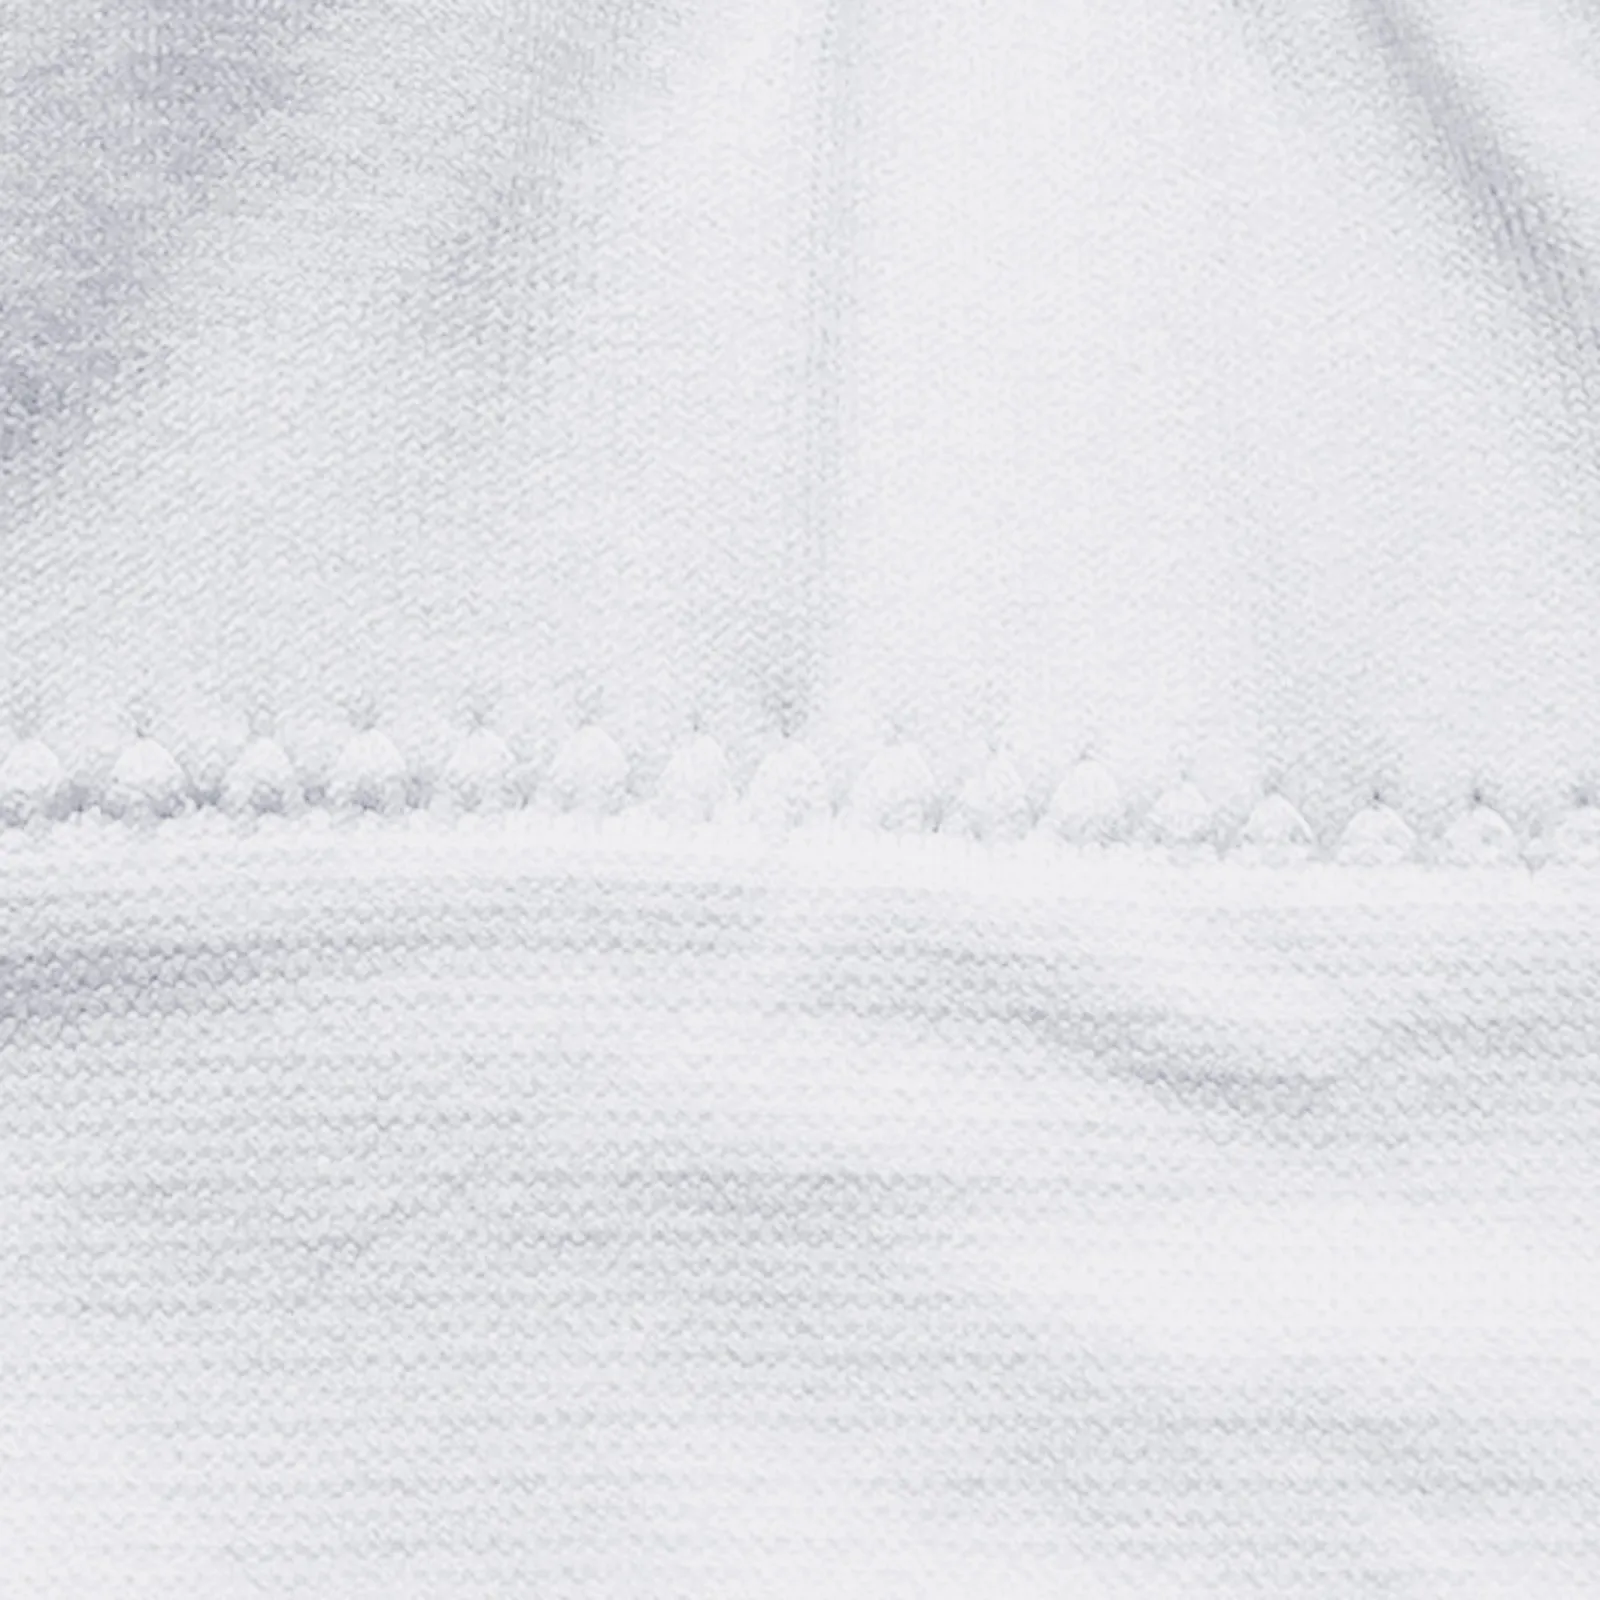 90 72 10. Простыня на резинке Мерцана. Texture White Jeans Denim. Белые джинсы текстура. Куртка texture.